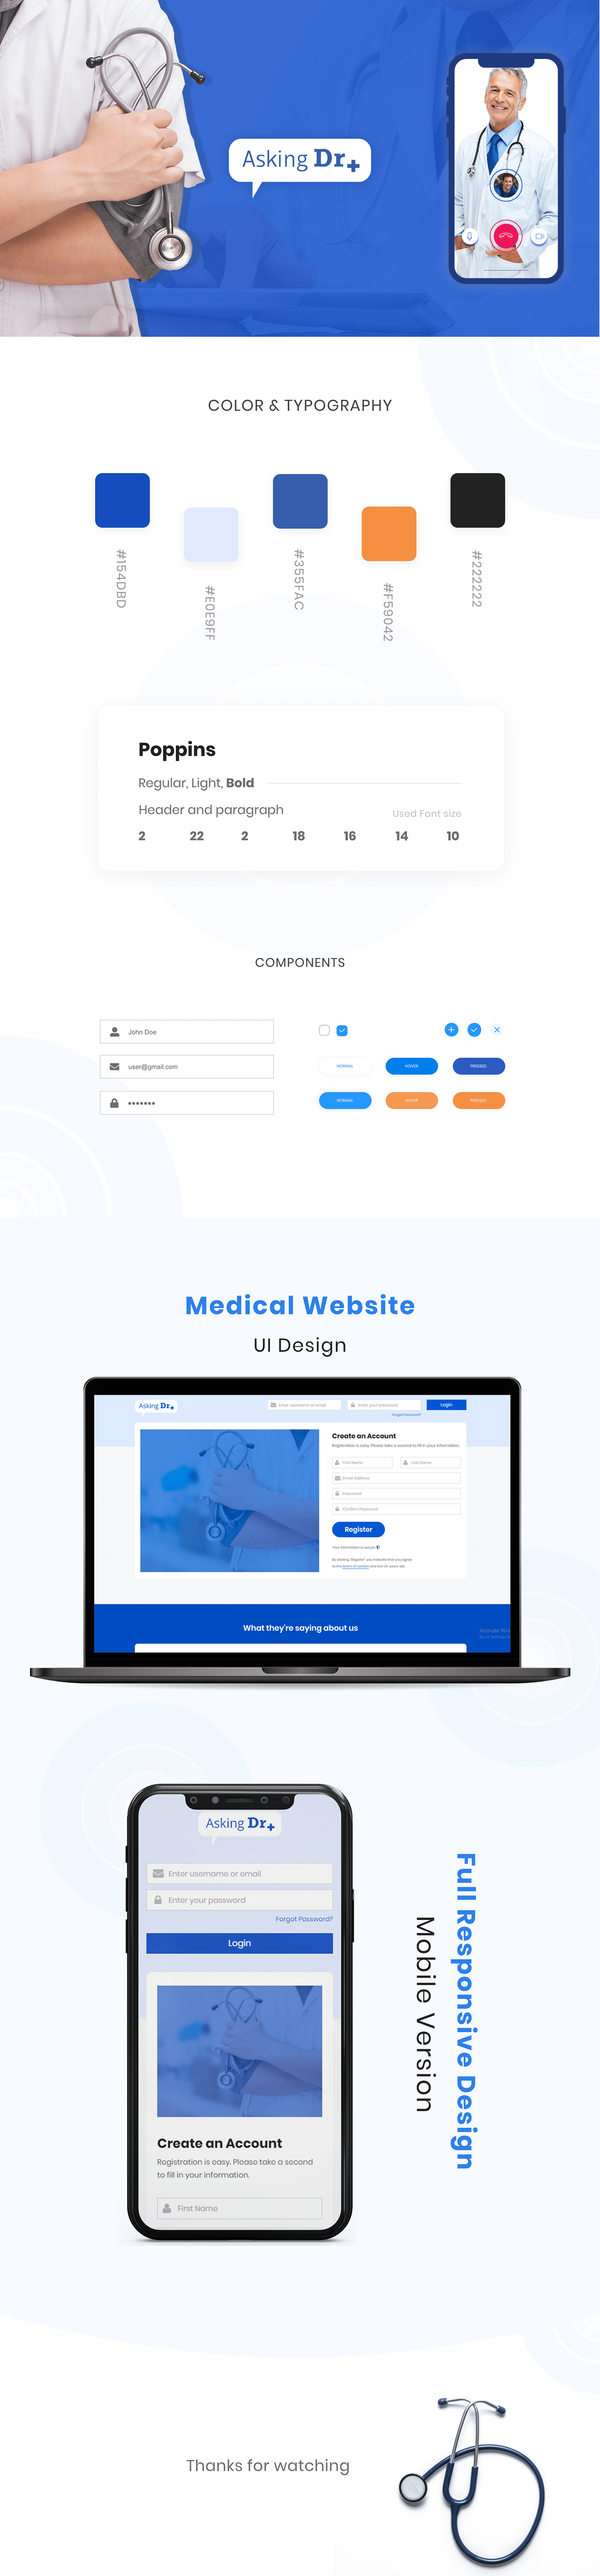 medical Website design